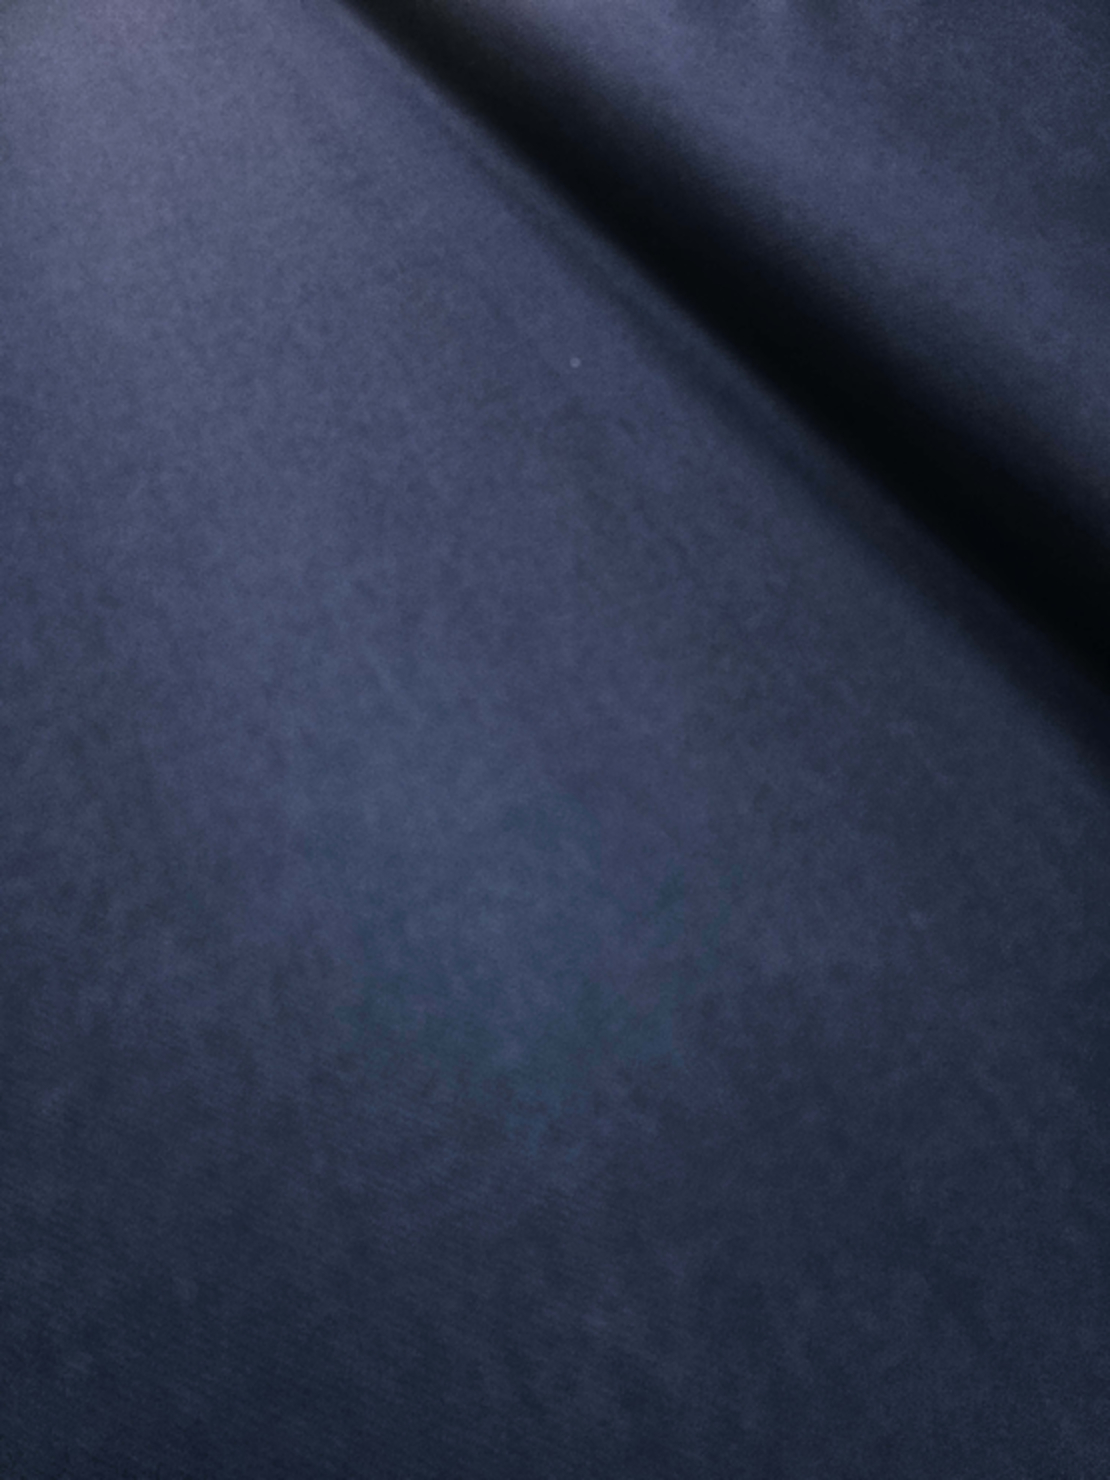 אריג דיאגונל מחטב צבע כחול כהה